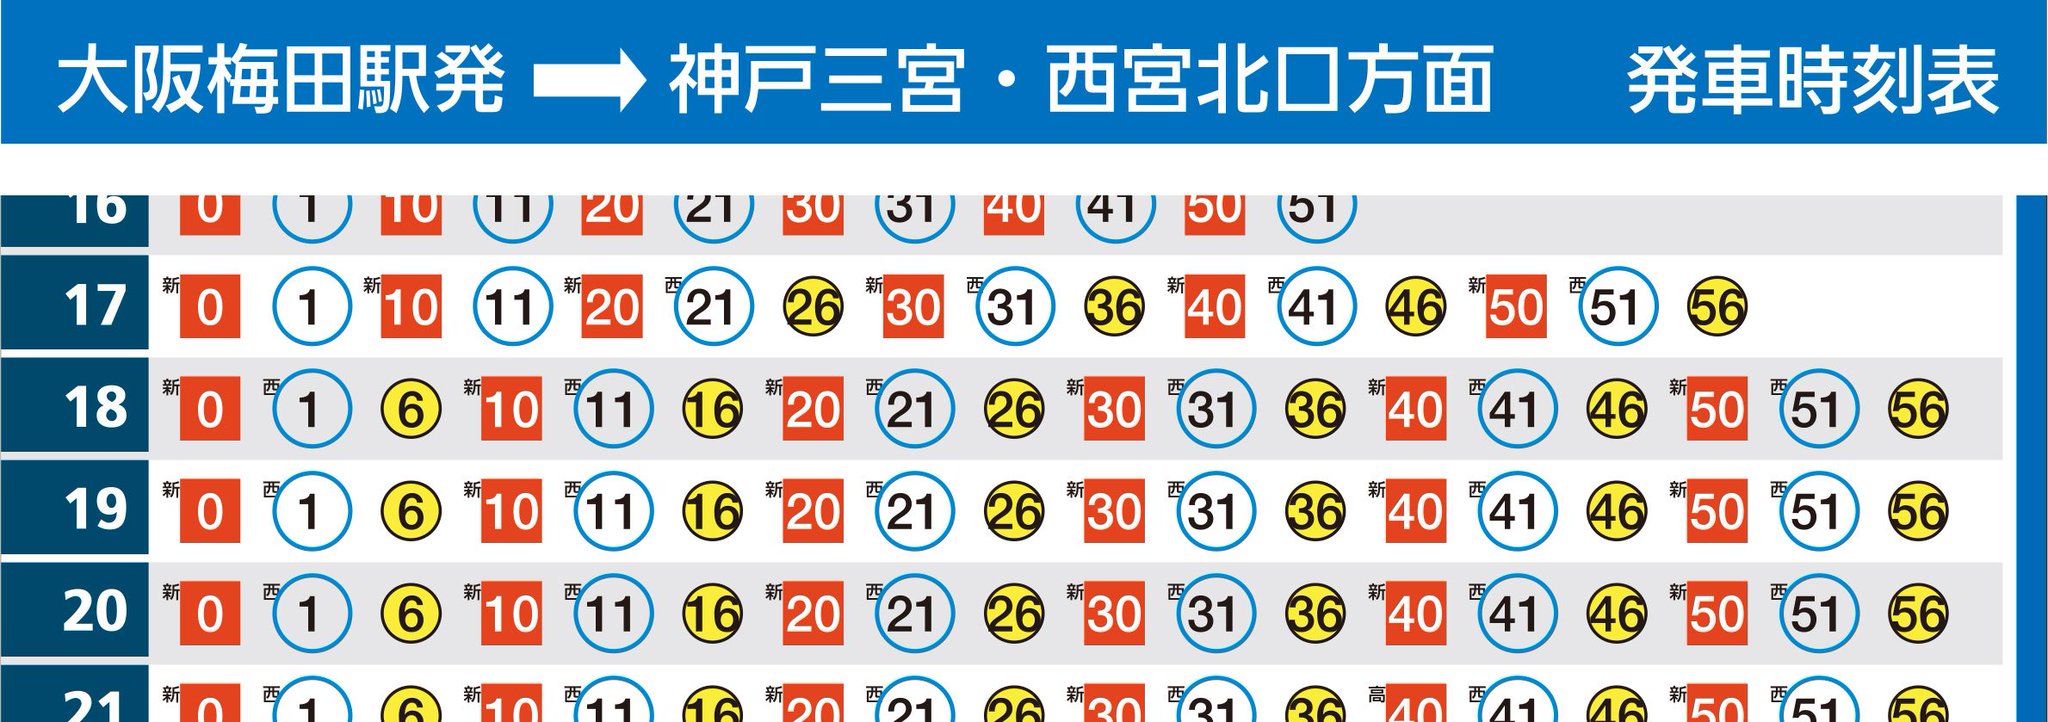 阪急電鉄 公式 ラッシュ時間帯は 片方向にお客様が集中する時間帯ですので 上りと下りのパターン構成が違う場合がよくあります 画像は 神戸本線の夕方ラッシュ時 西宮北口 大阪梅田 の例